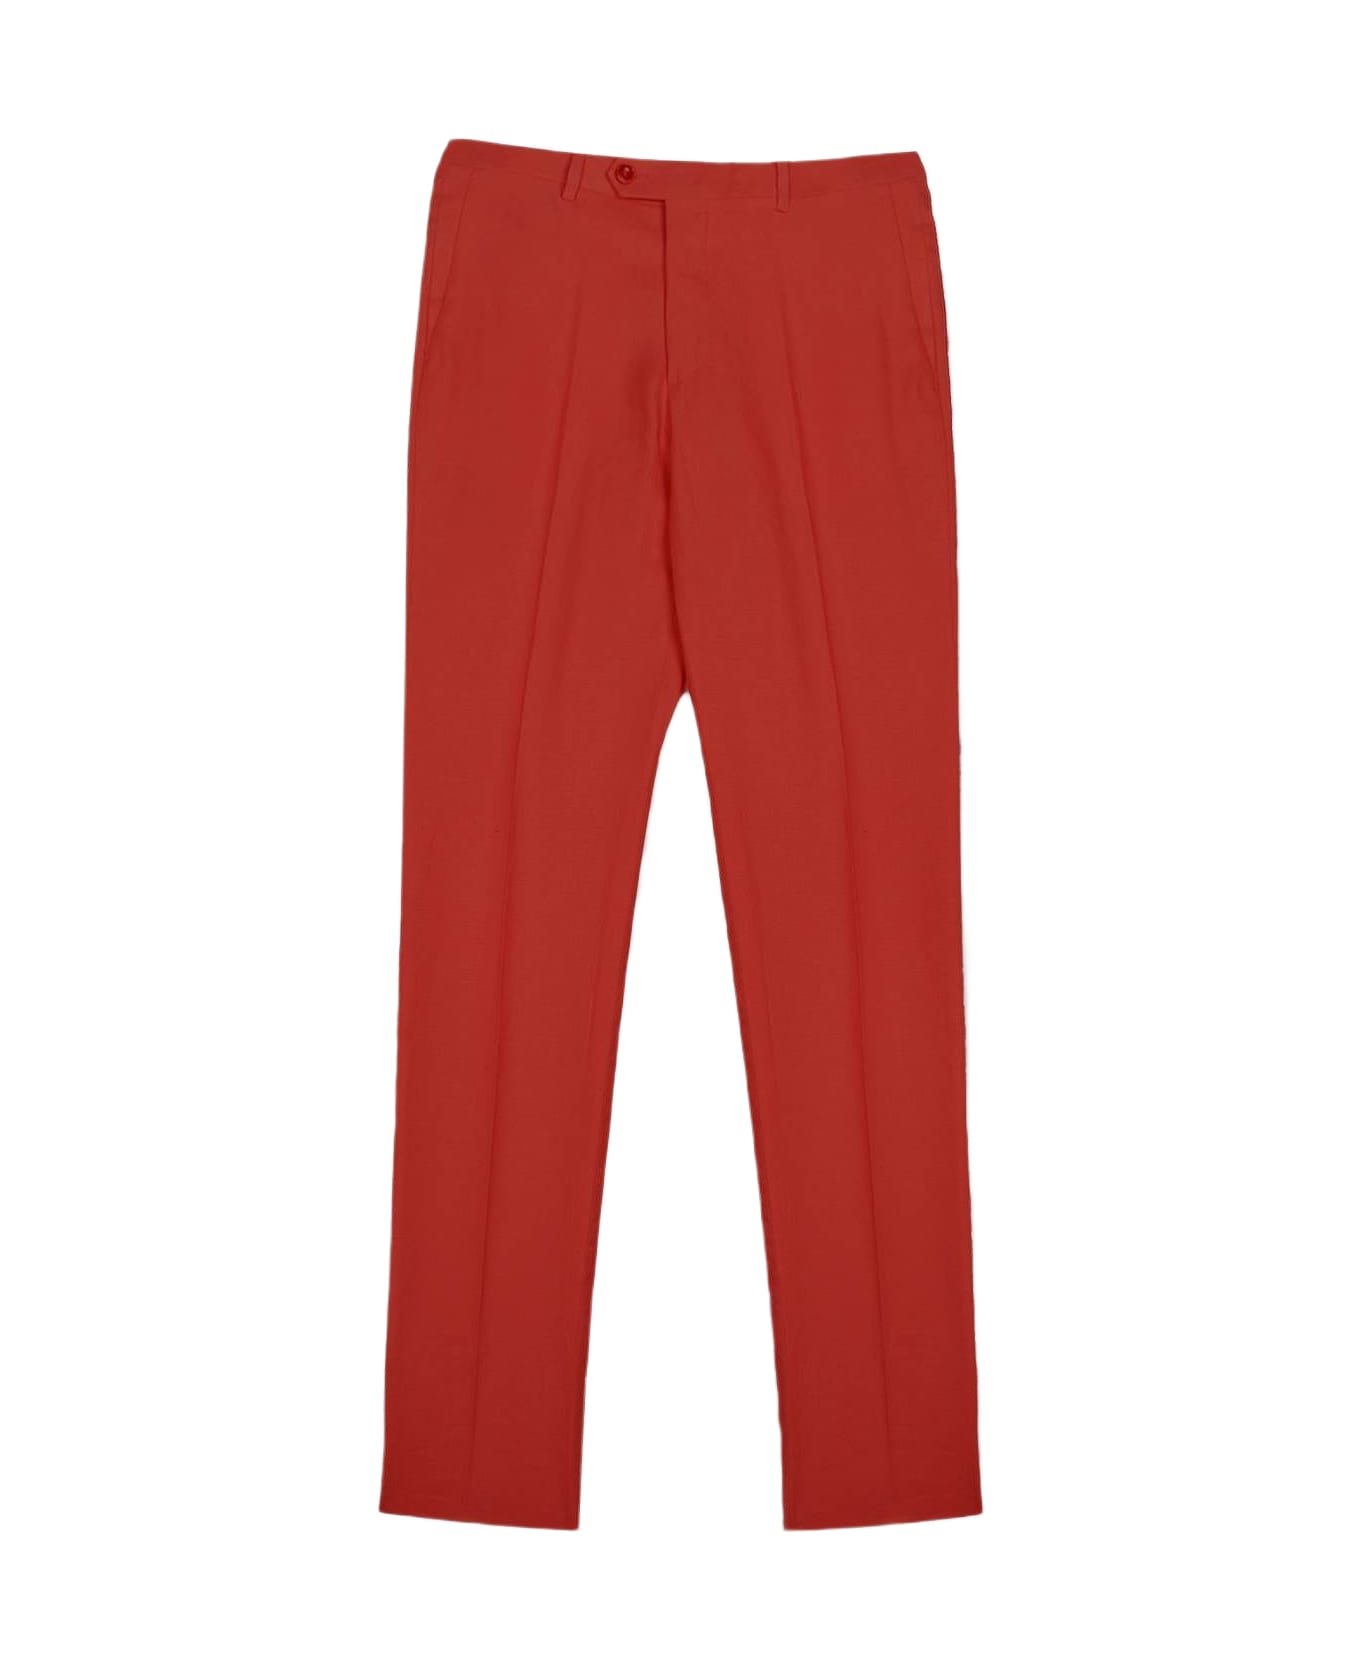 Larusmiani Trousers 'portofino' Pants - Red